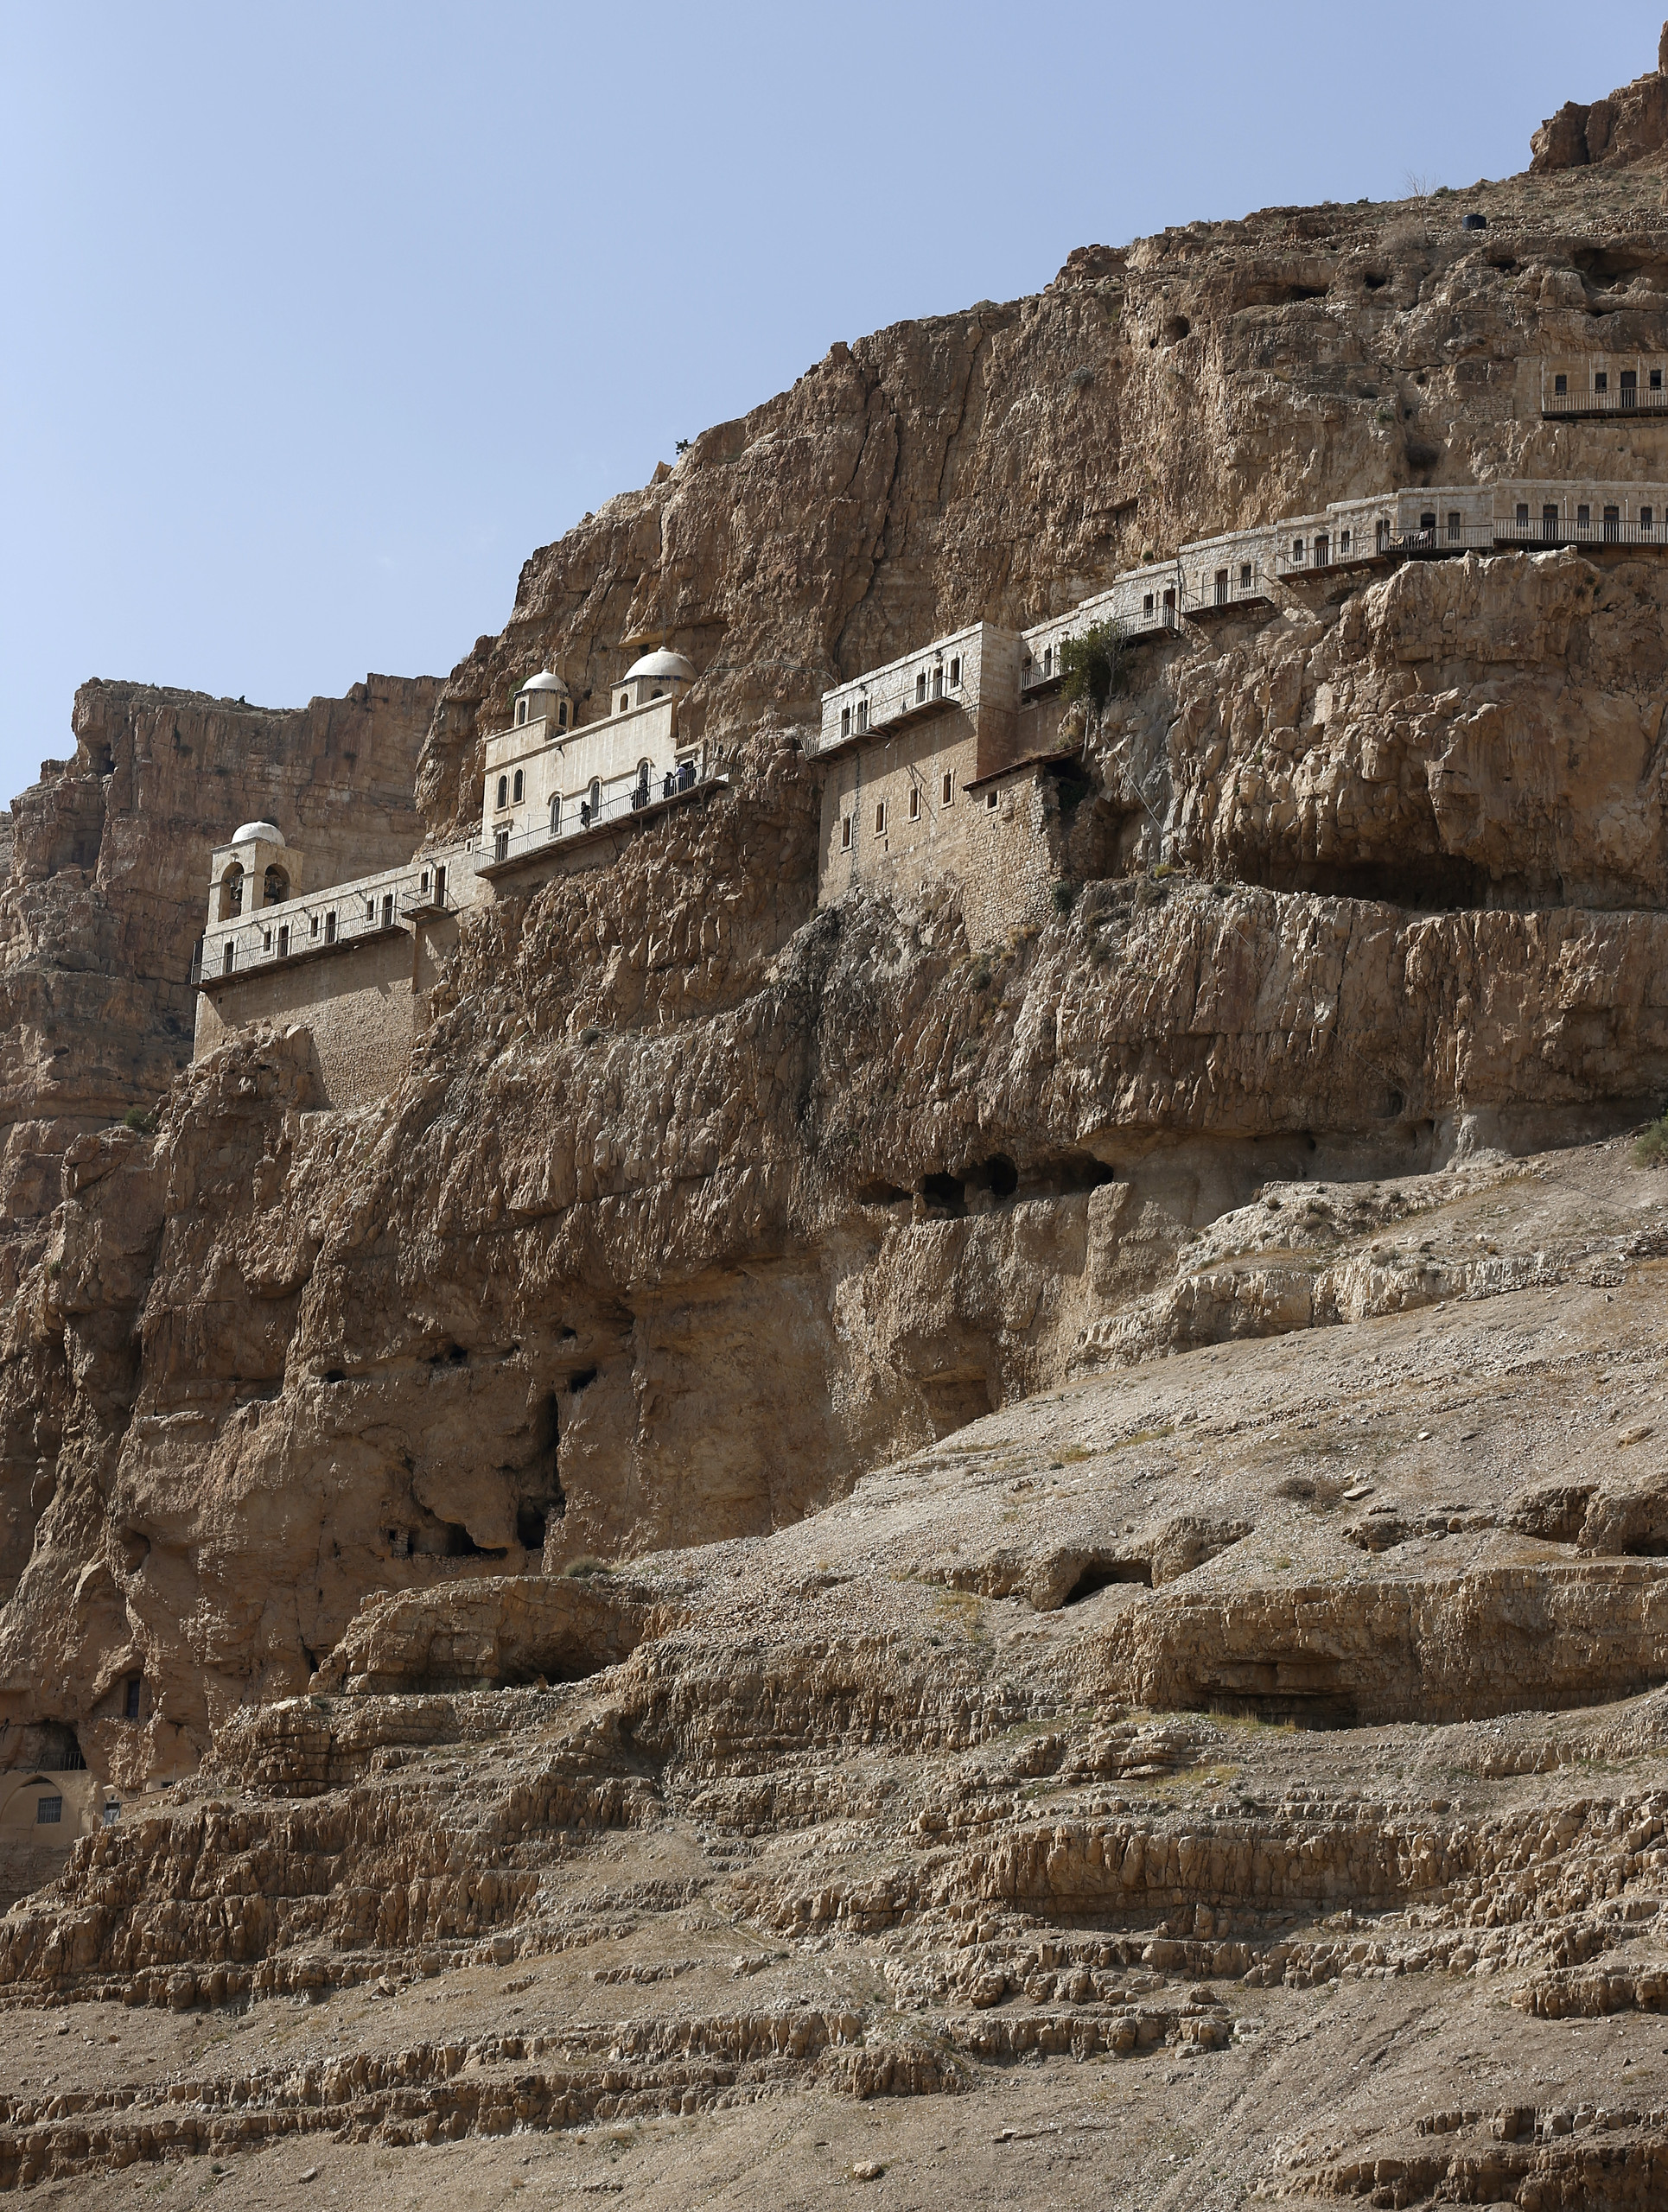 بالصور والفيديو - الدير الذي لجأ إليه المسيح بعد عماده في نهر الأردن وصام فيه 40 يومًا